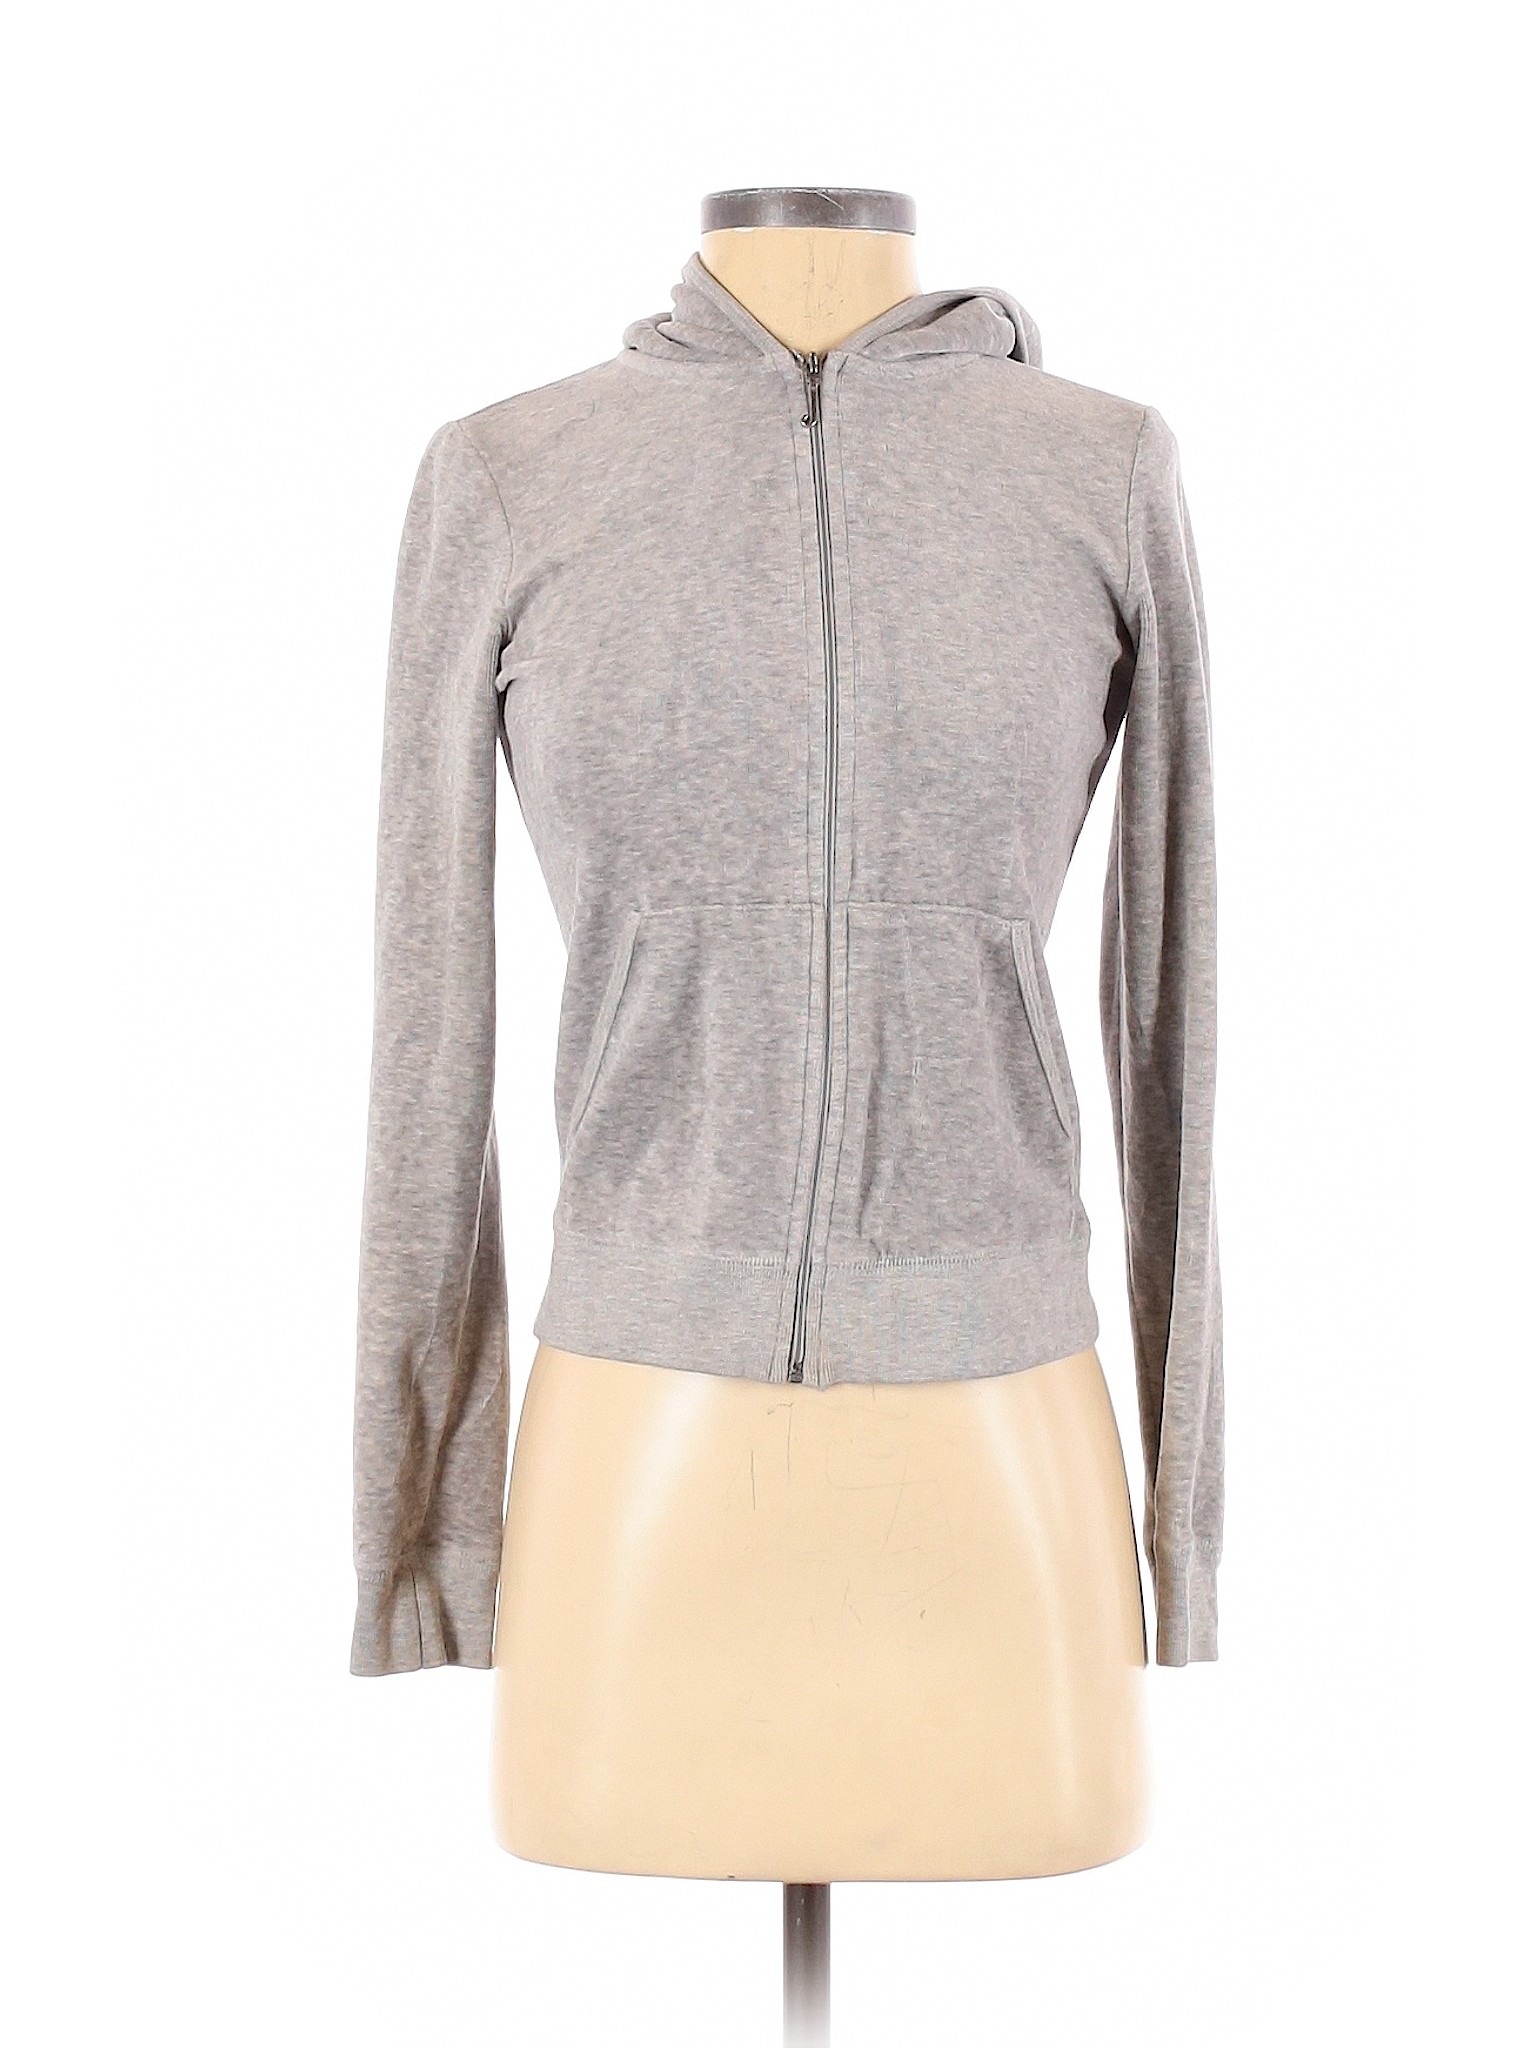 Juicy Couture Women Gray Zip Up Hoodie S | eBay